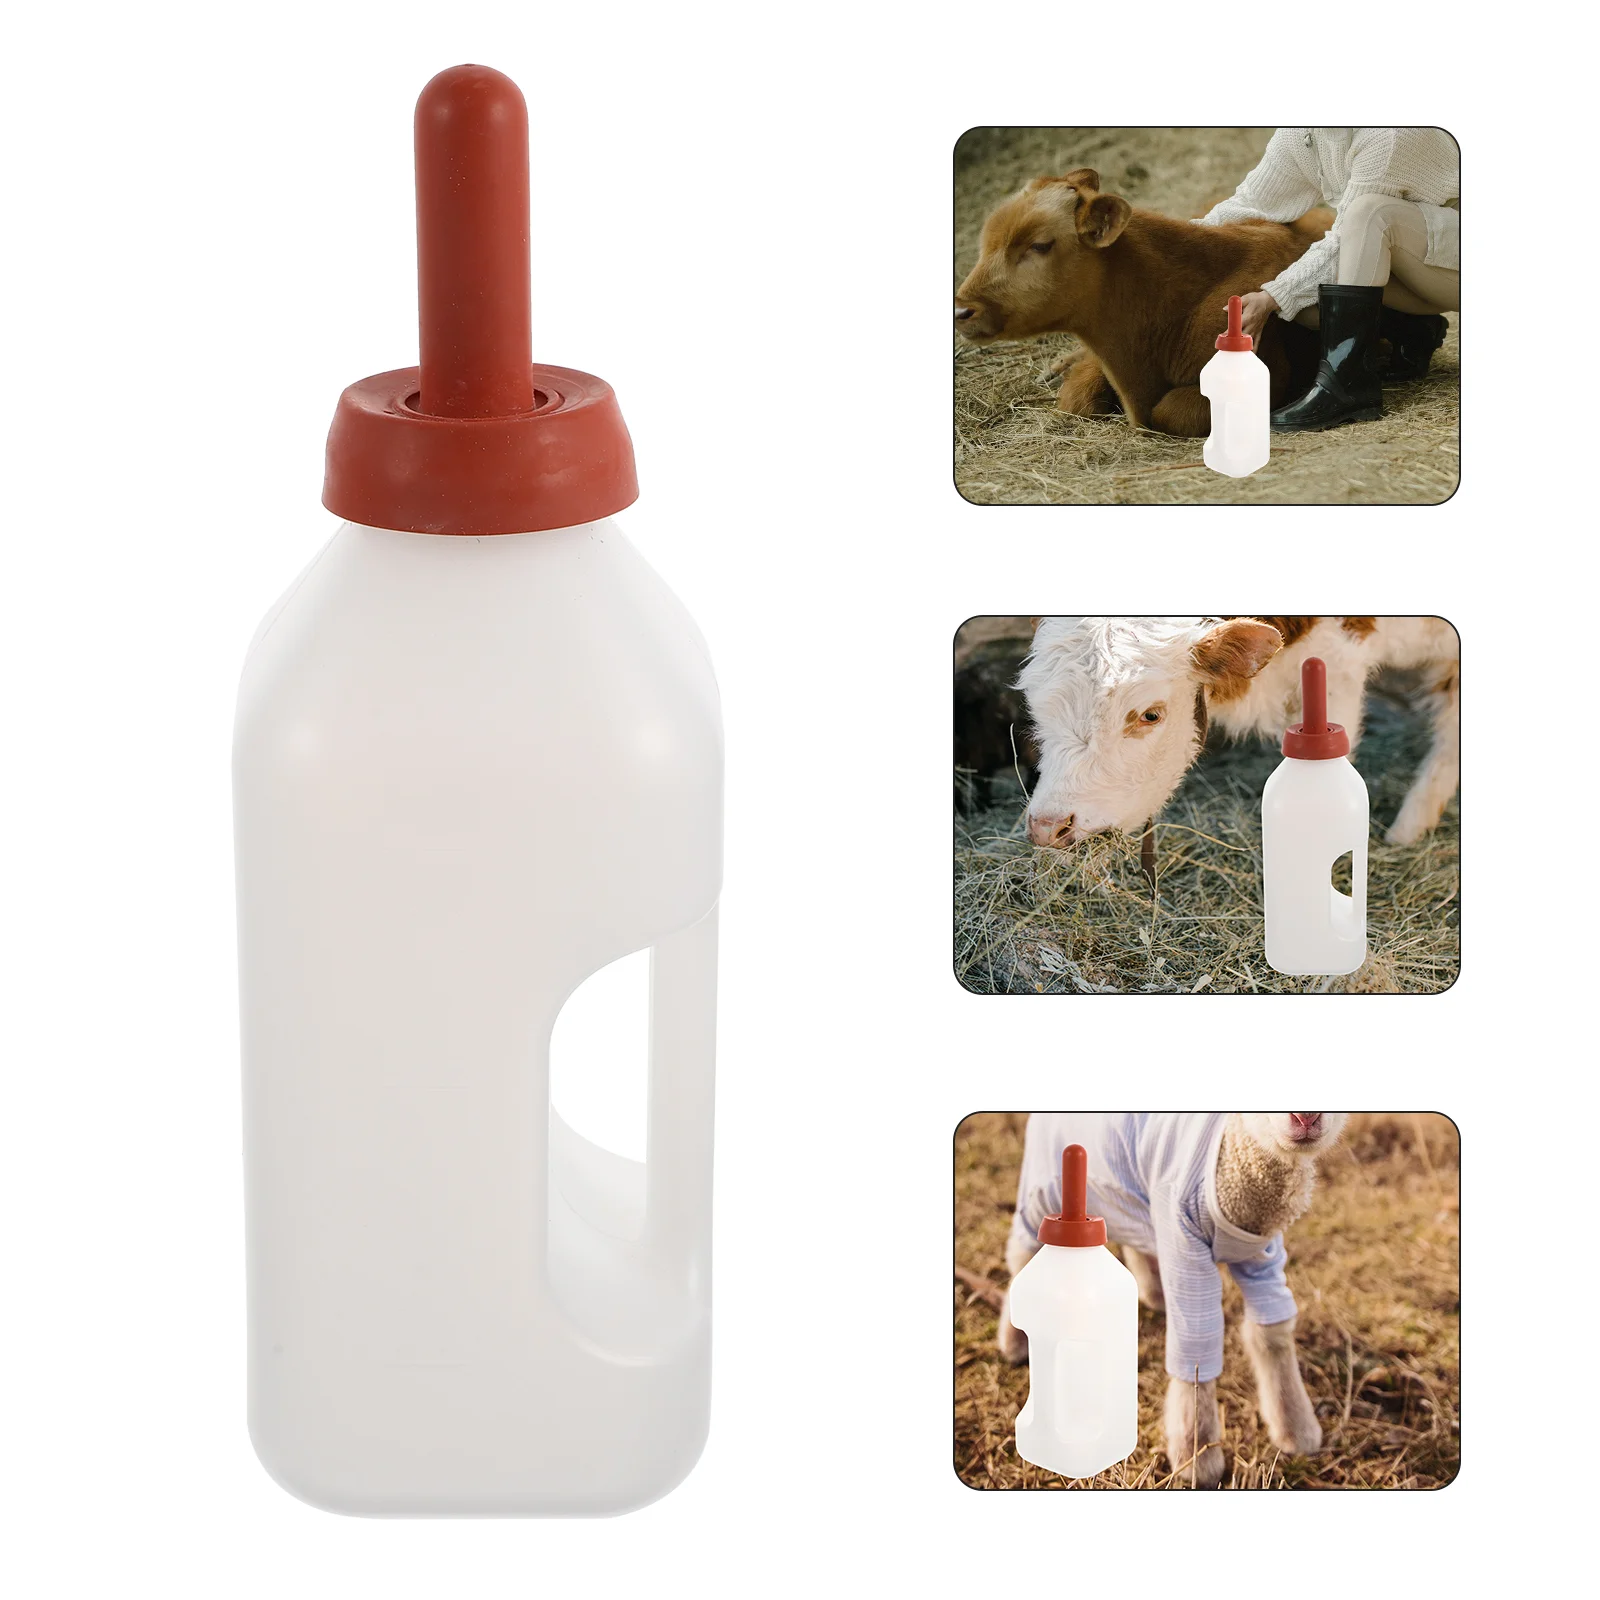 

Бутылочка для кормления икр, инструмент для кормления ягненка, контейнер для домашних животных, бутылочки для молока для домашних животных из козы